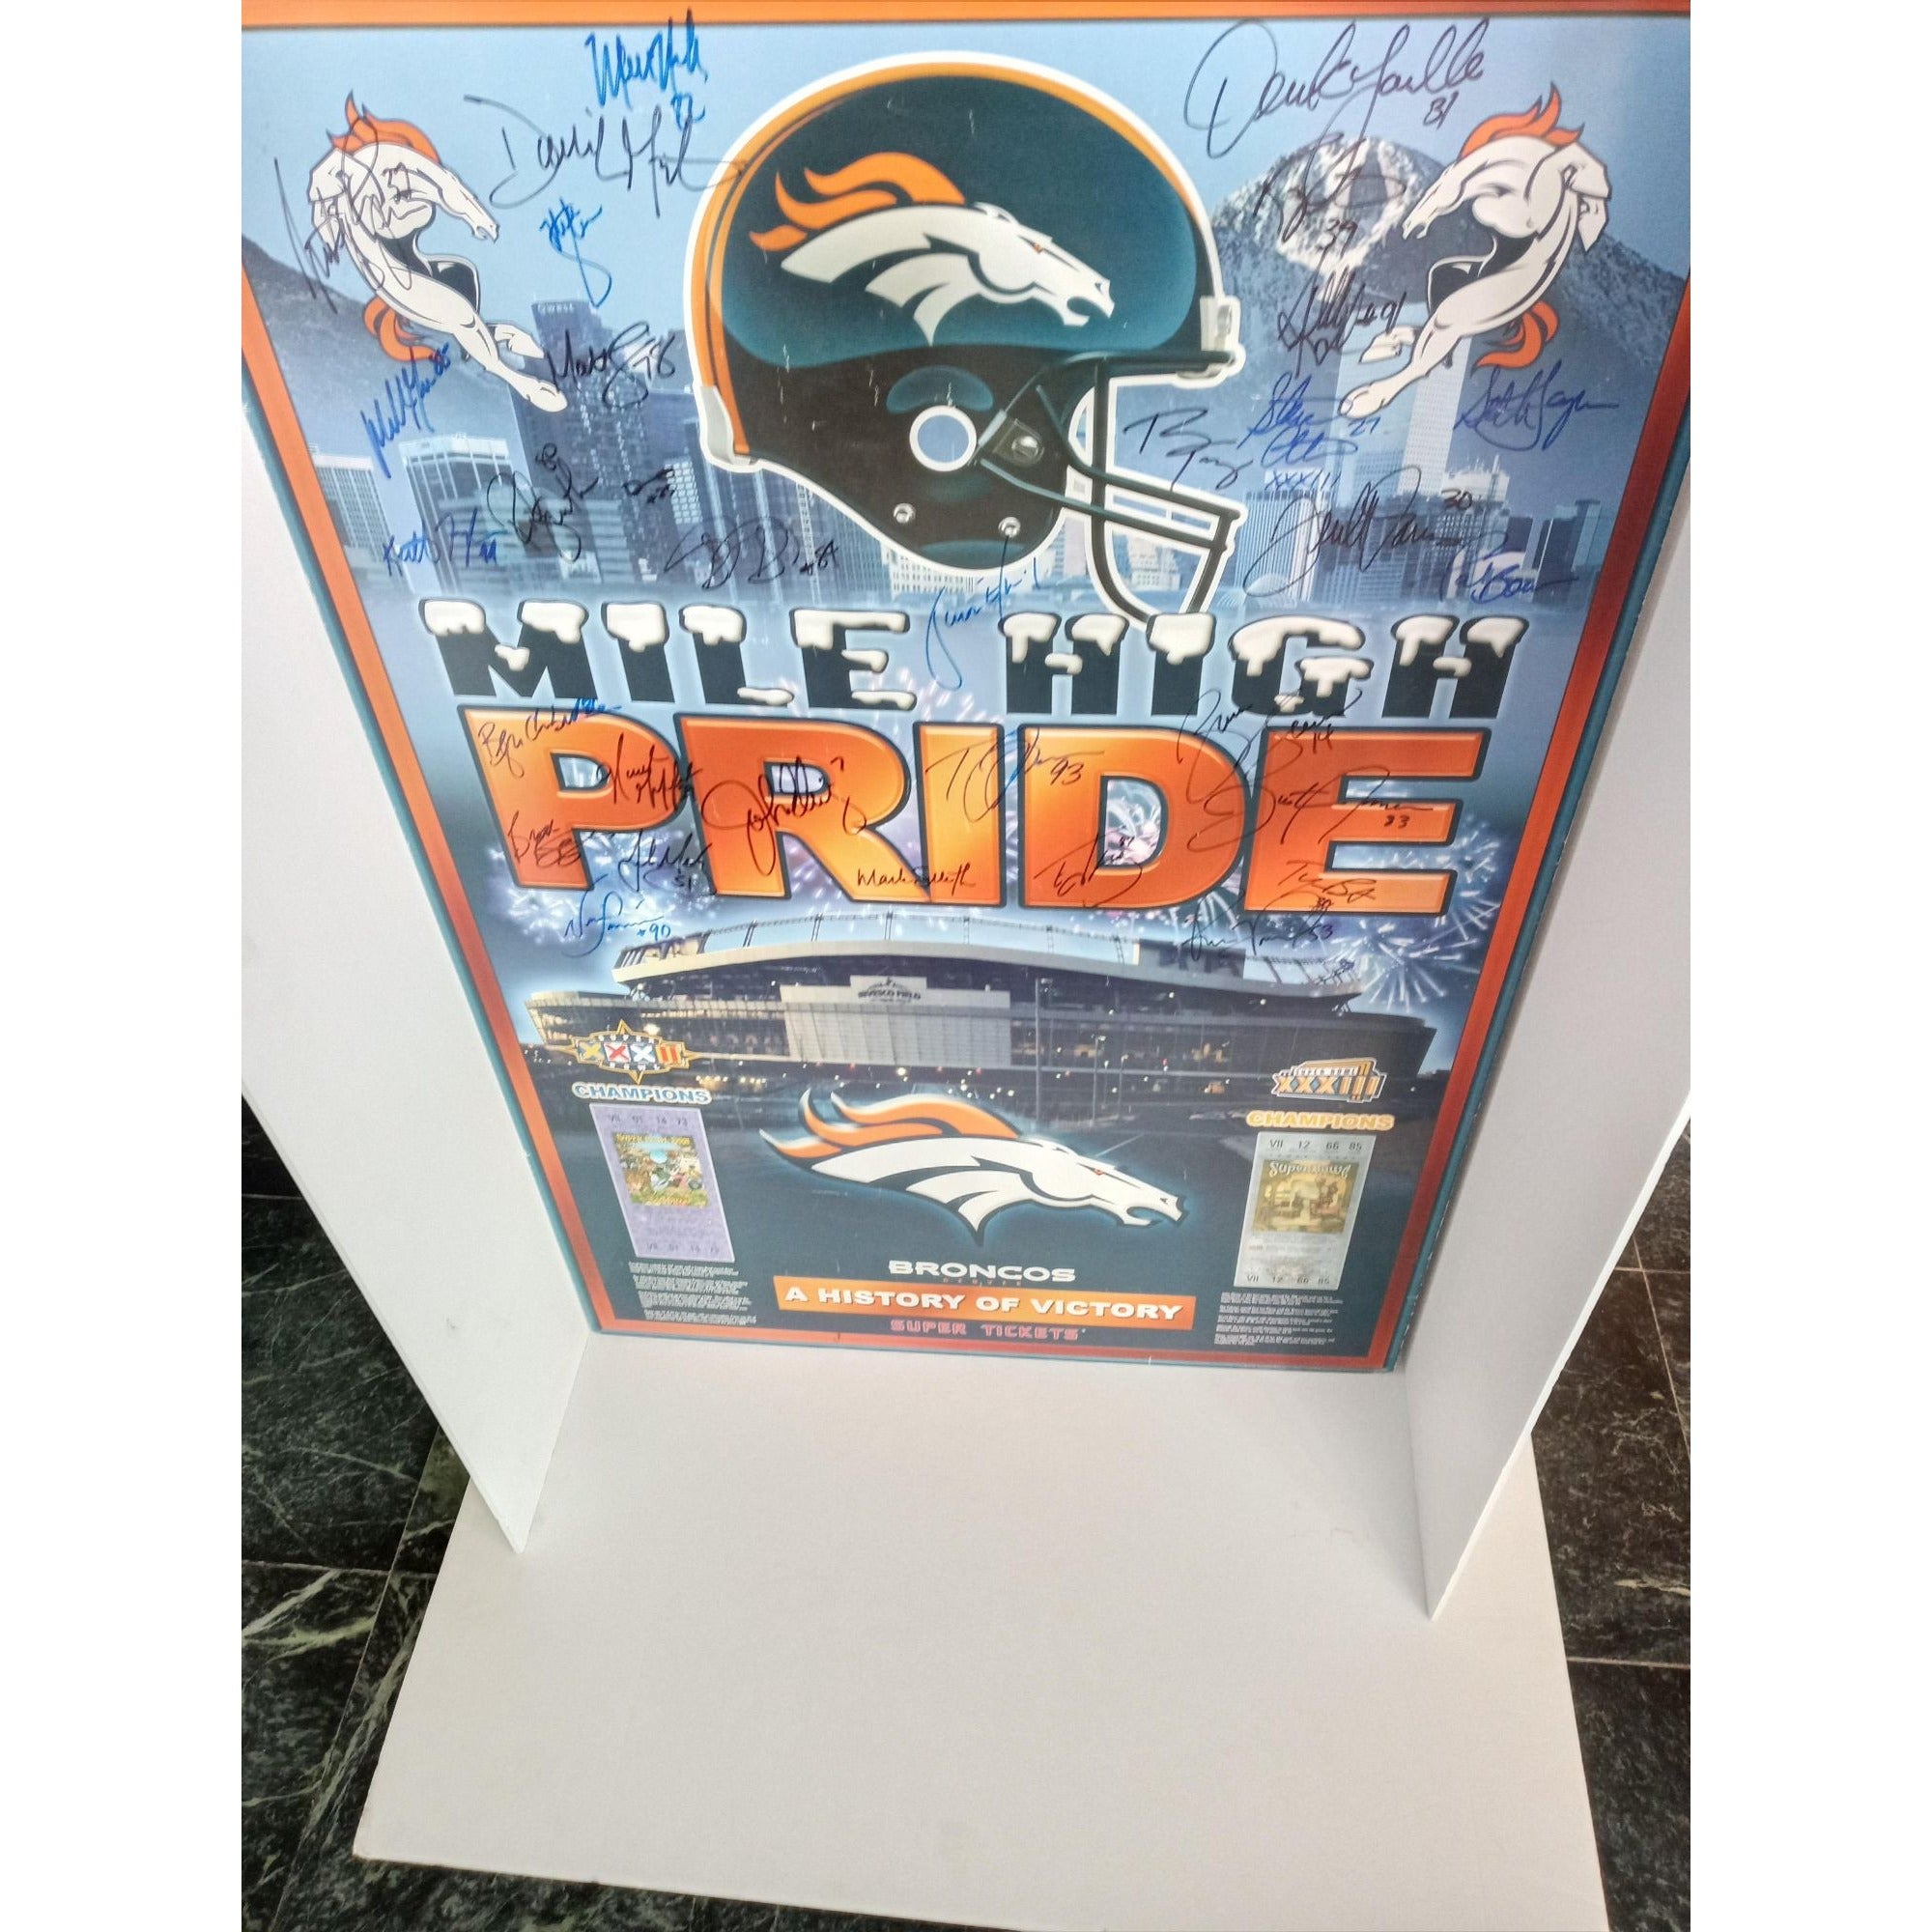 John Elway Denver Broncos Super Bowl champs signed poster